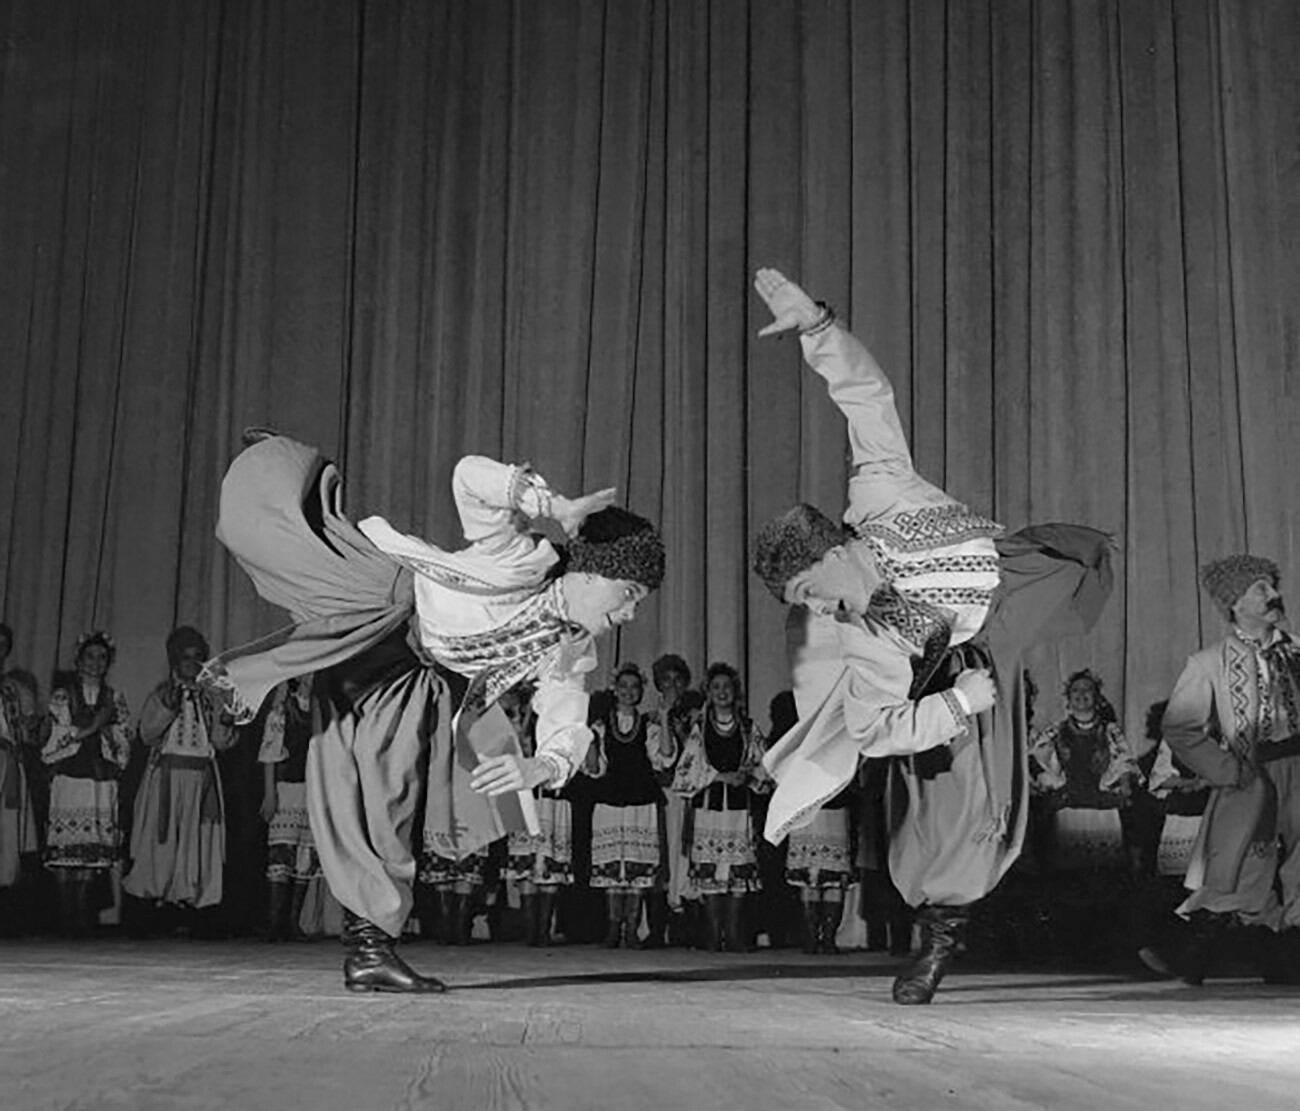 Una danza ucraniana del conjunto de Ígor Moiséiev

